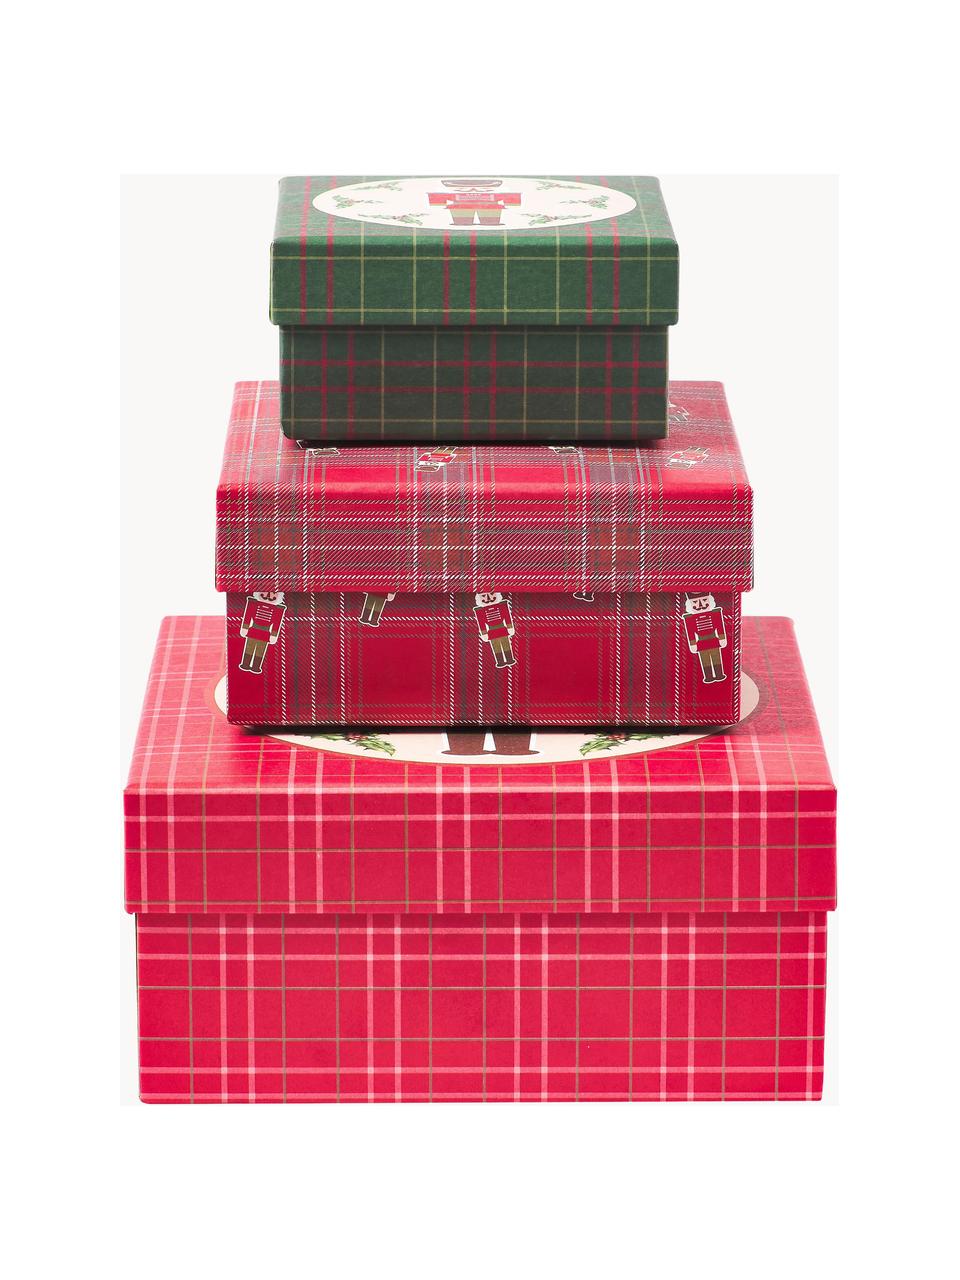 Sada dárkových krabiček Nussknacker, 3 díly, Papír, Červená, zelená, béžová, Sada s různými velikostmi